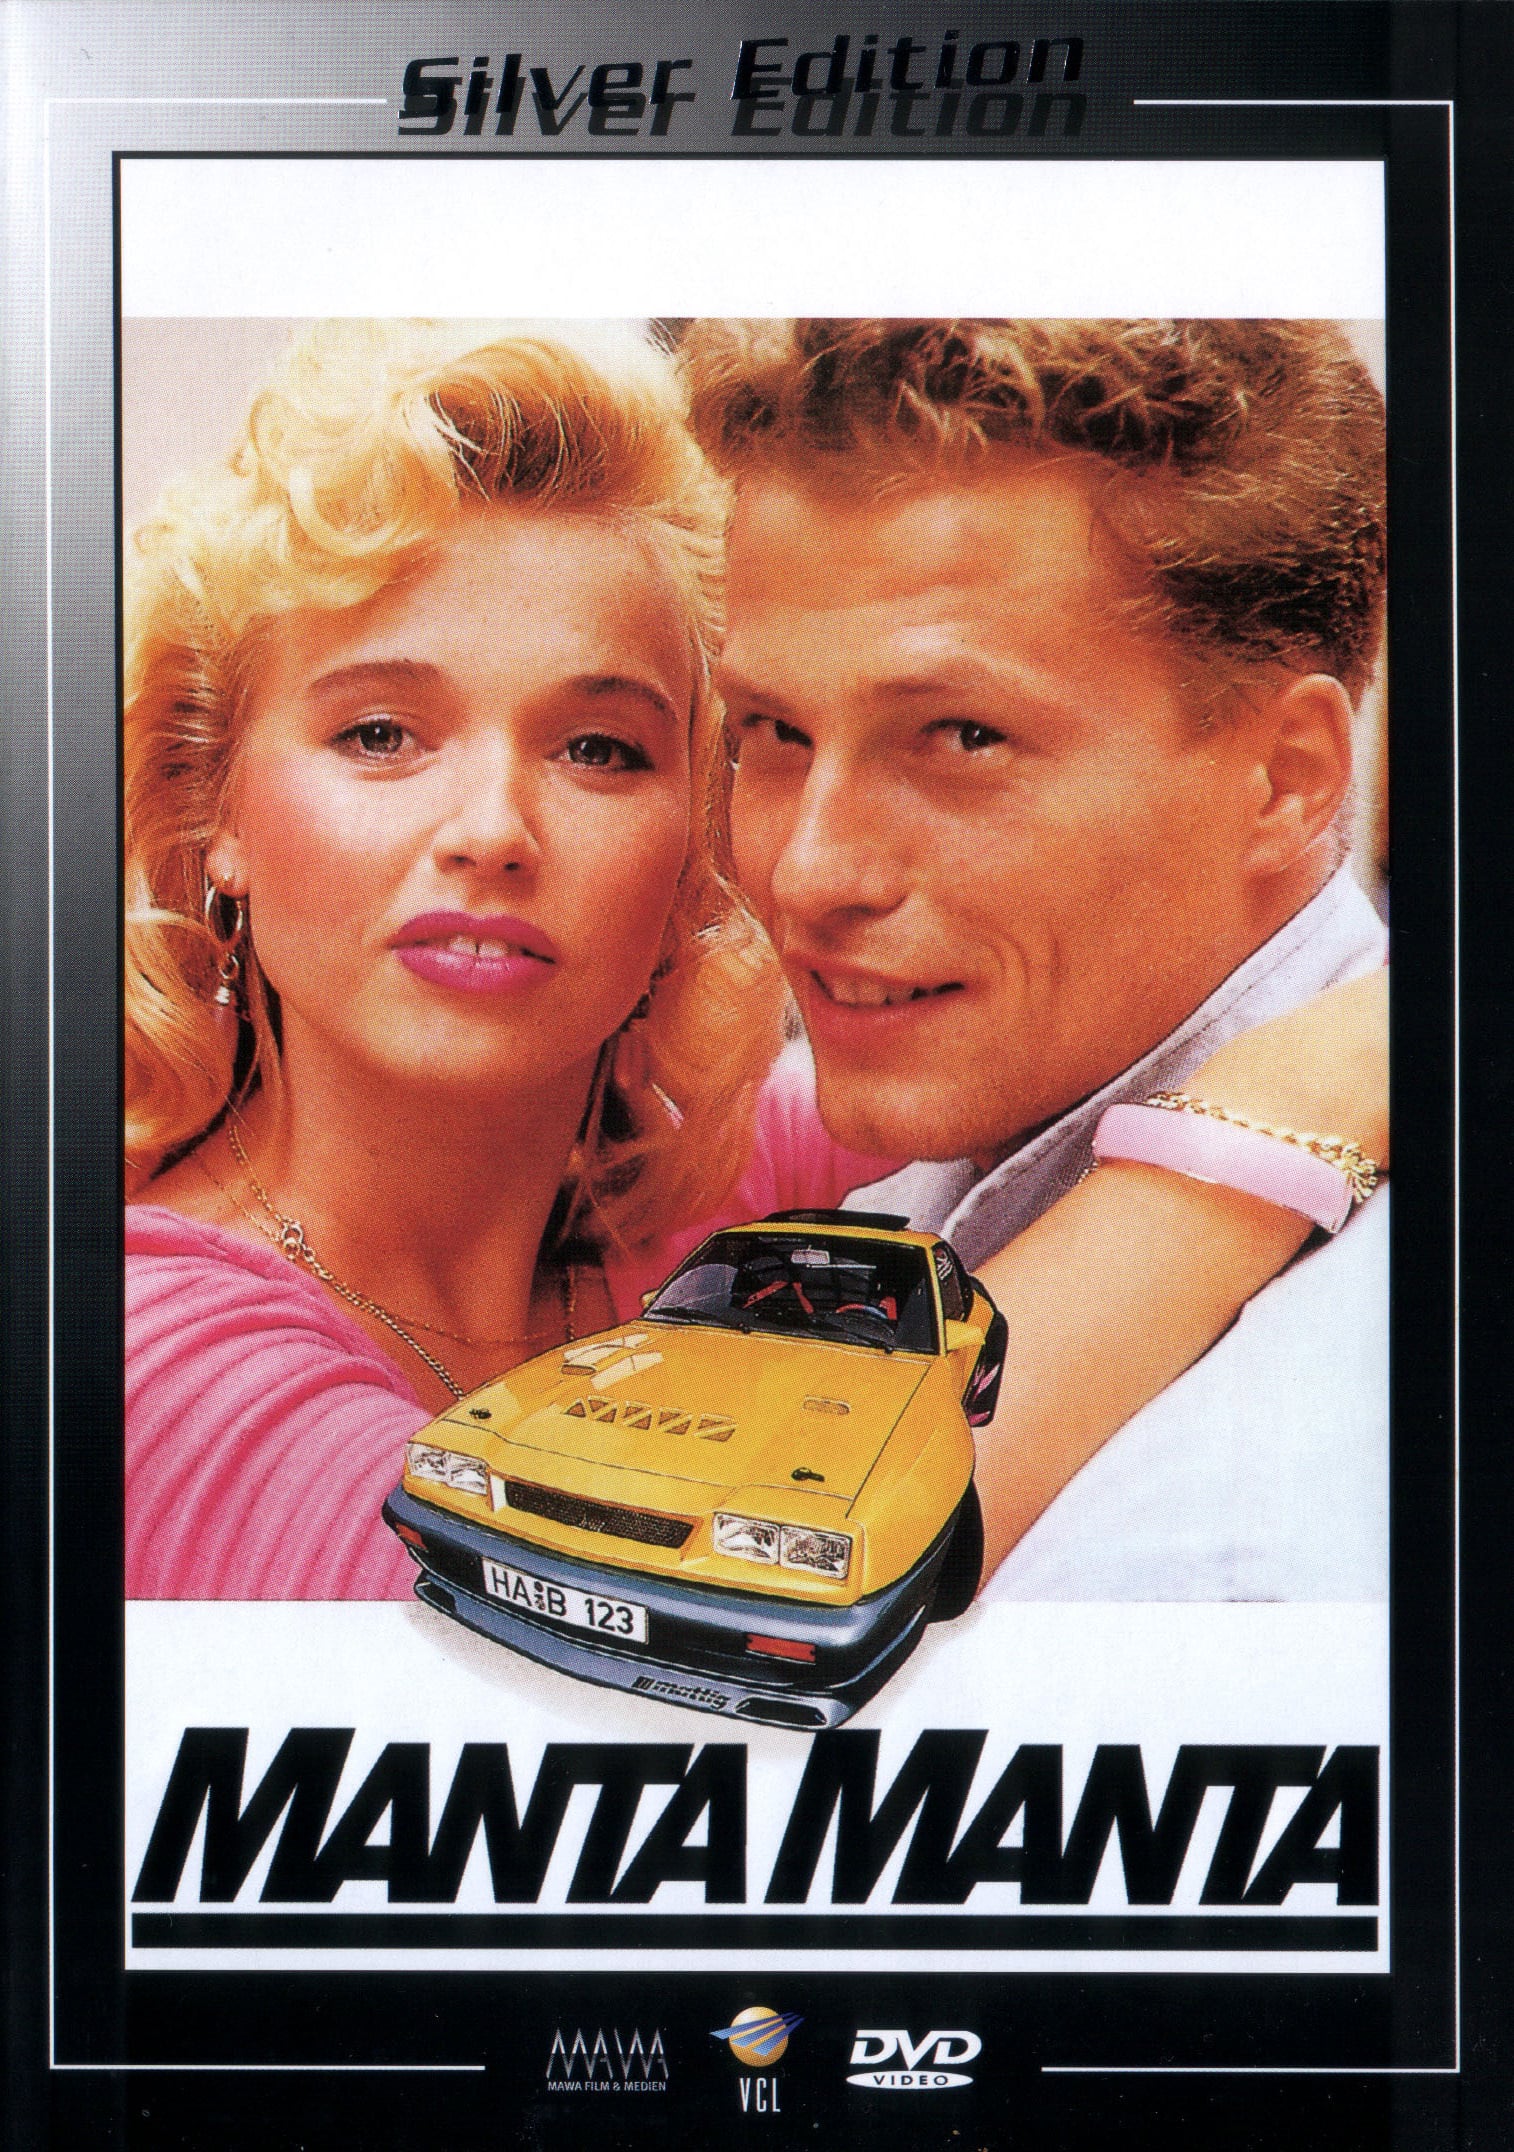 Plakat von "Manta, Manta"